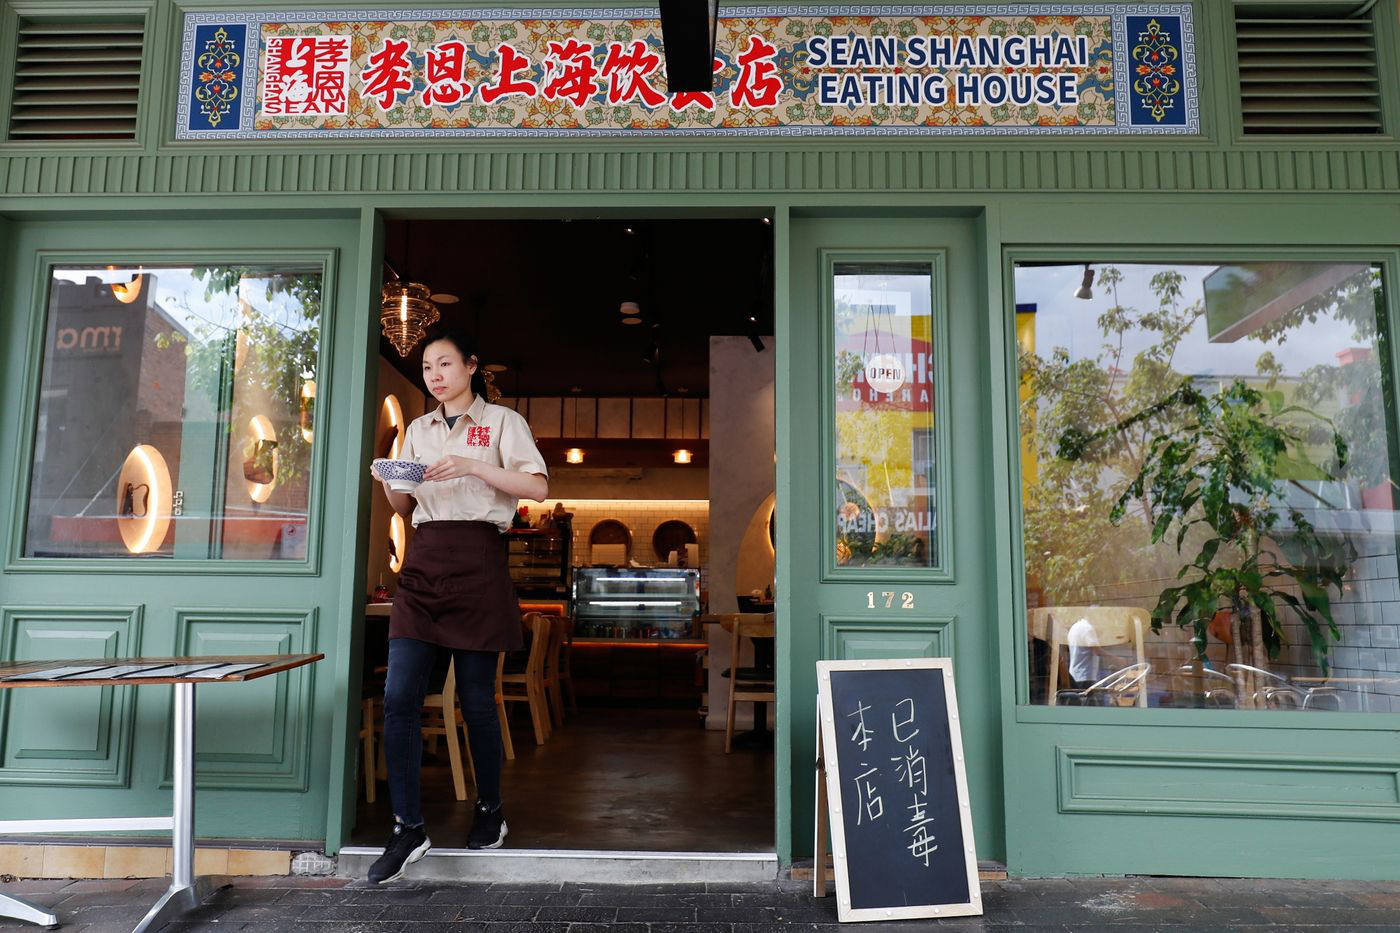 Lo sợ dịch bệnh, những nhà hàng ở các khu Chinatown trên khắp thế giới vắng lặng không một bóng người - Ảnh 1.